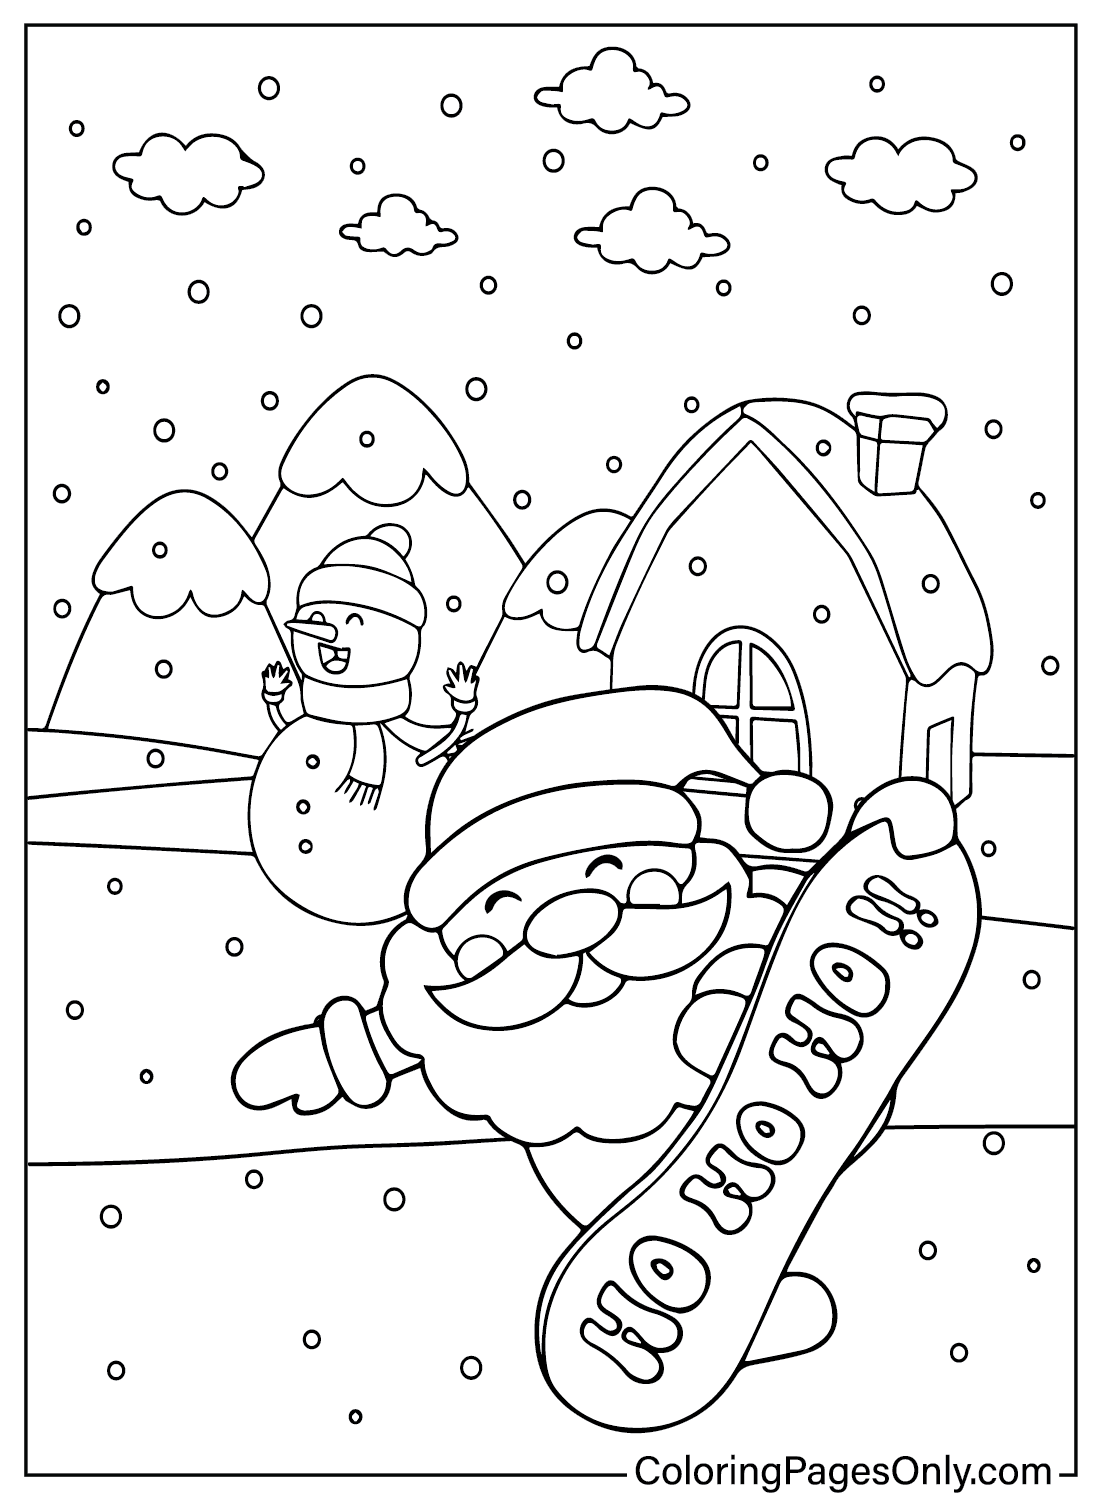 Santa Claus Coloring Page Free Printable from Santa Claus